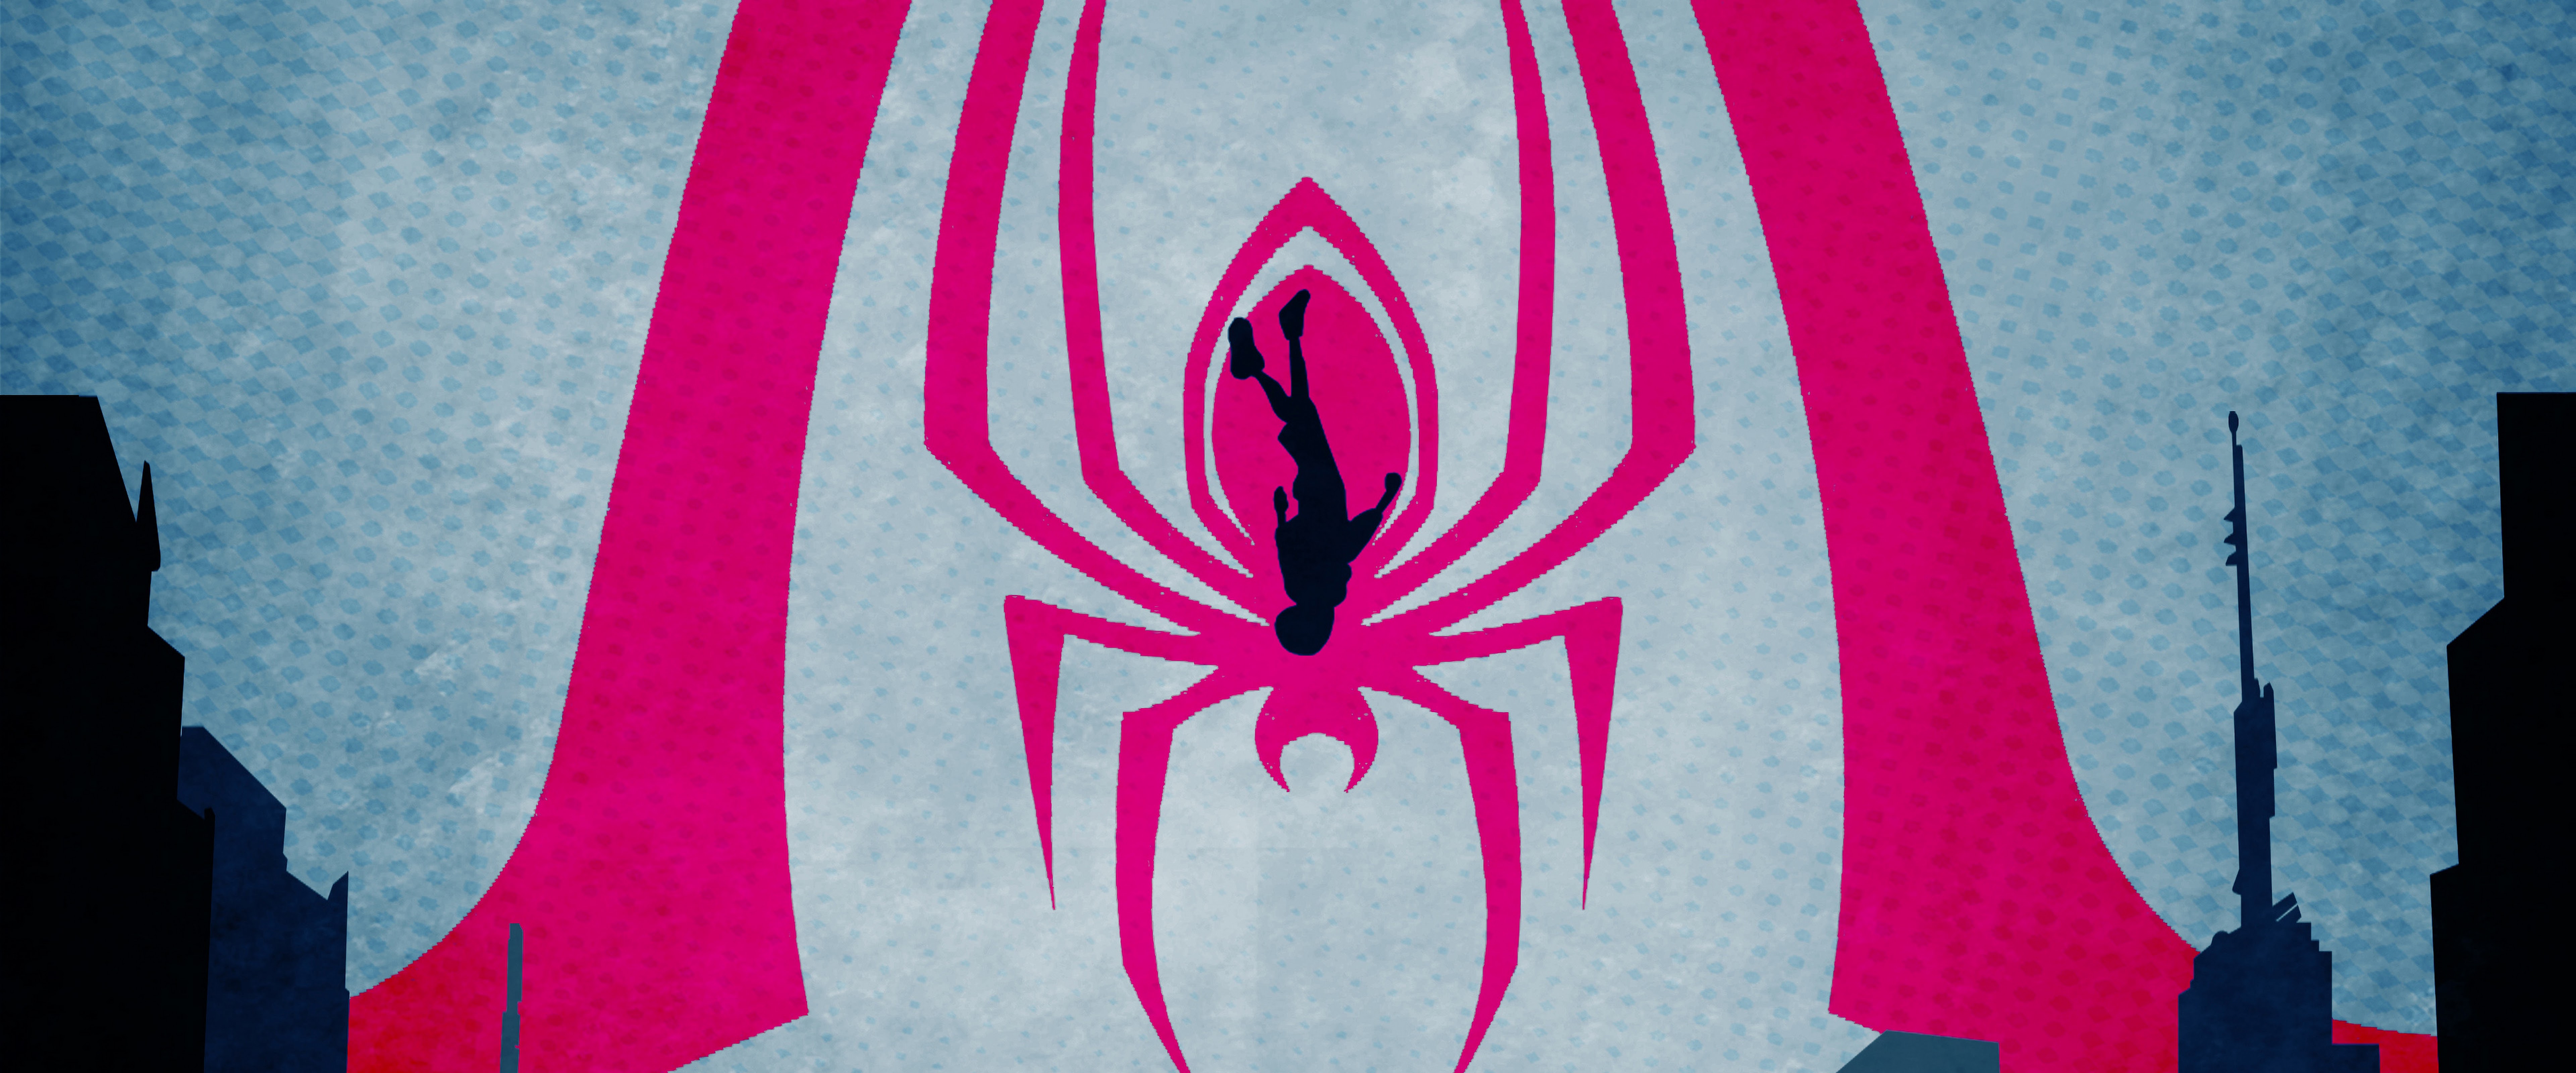 Spider Man: Into The Spider Verse Minimalist 4K Wallpaper